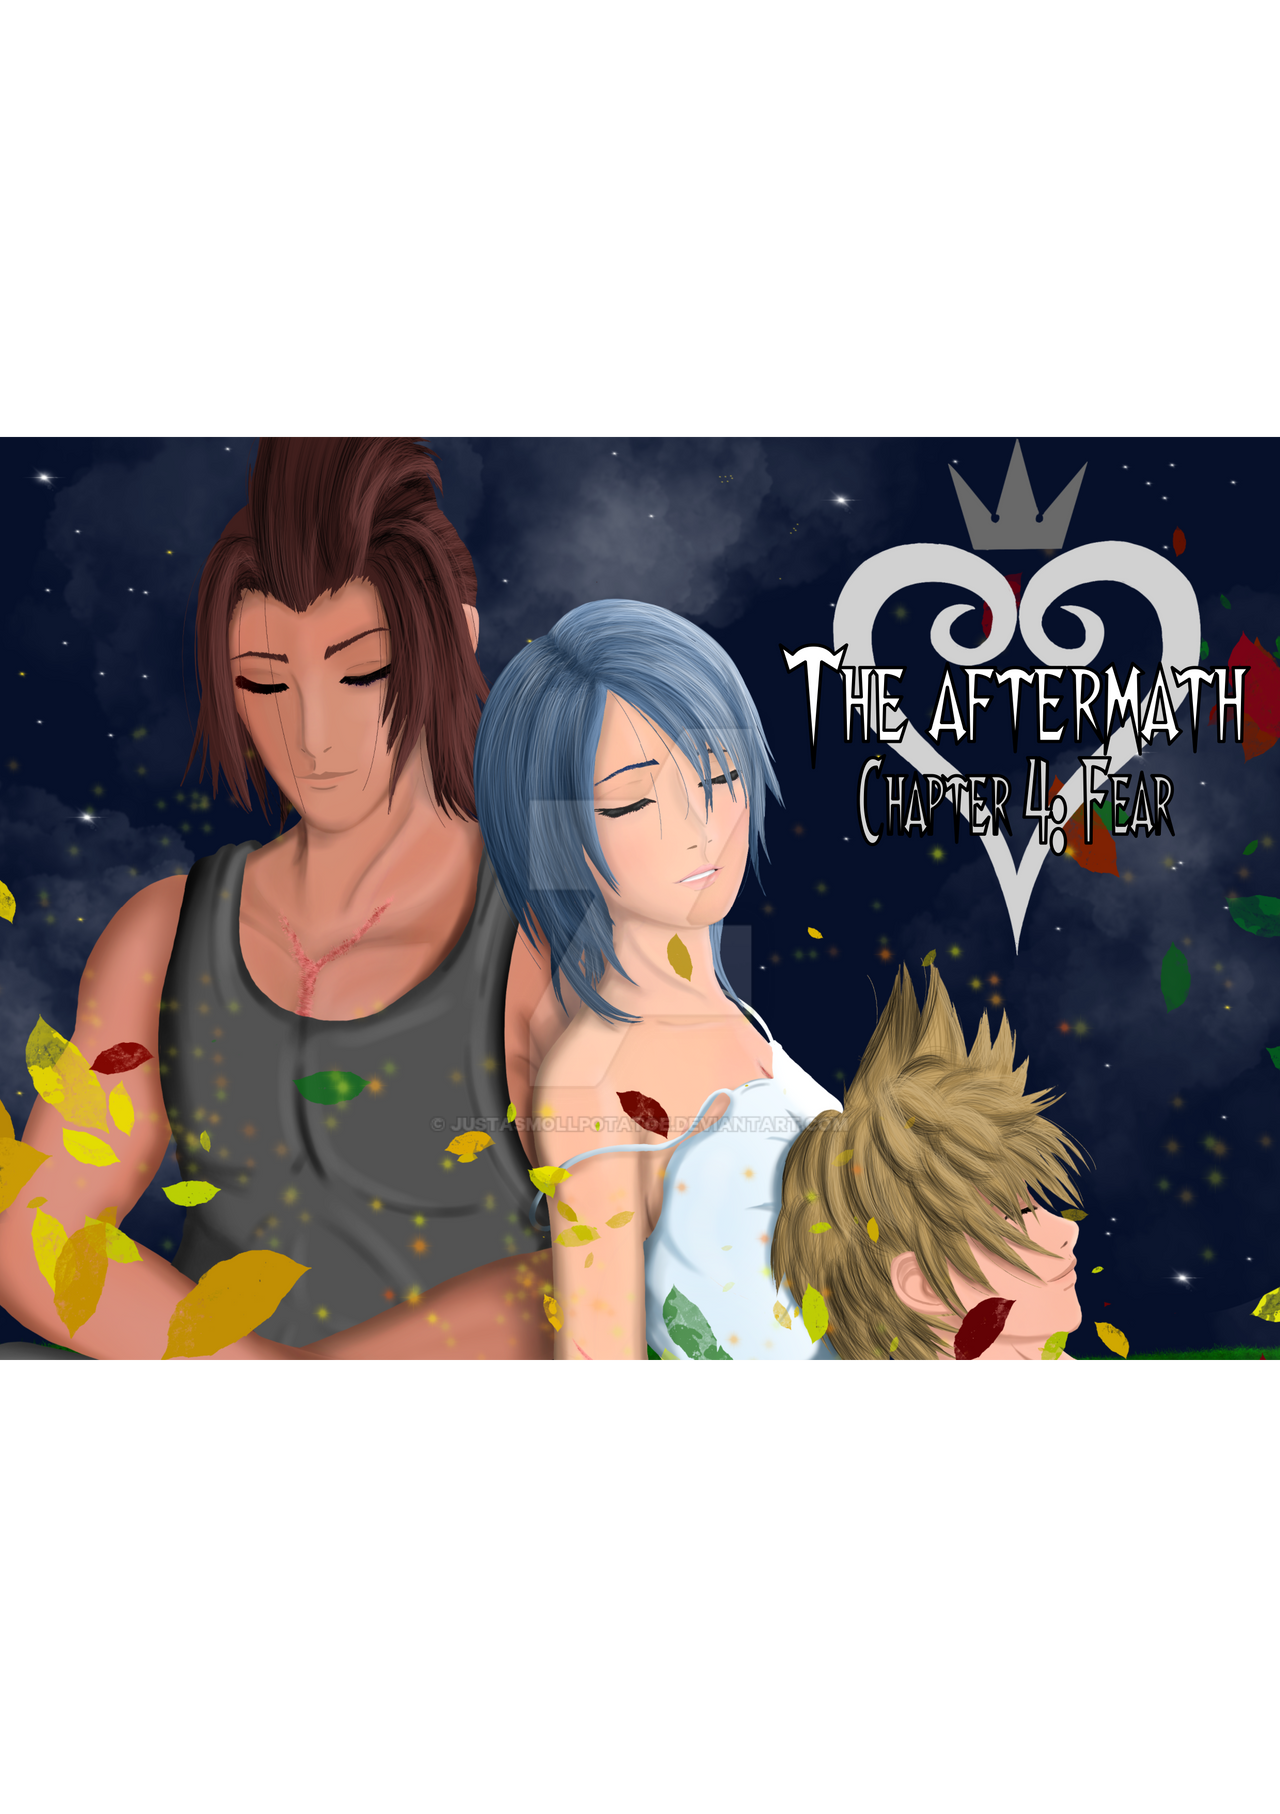 Kingdom Hearts IV by HolleysArt on DeviantArt